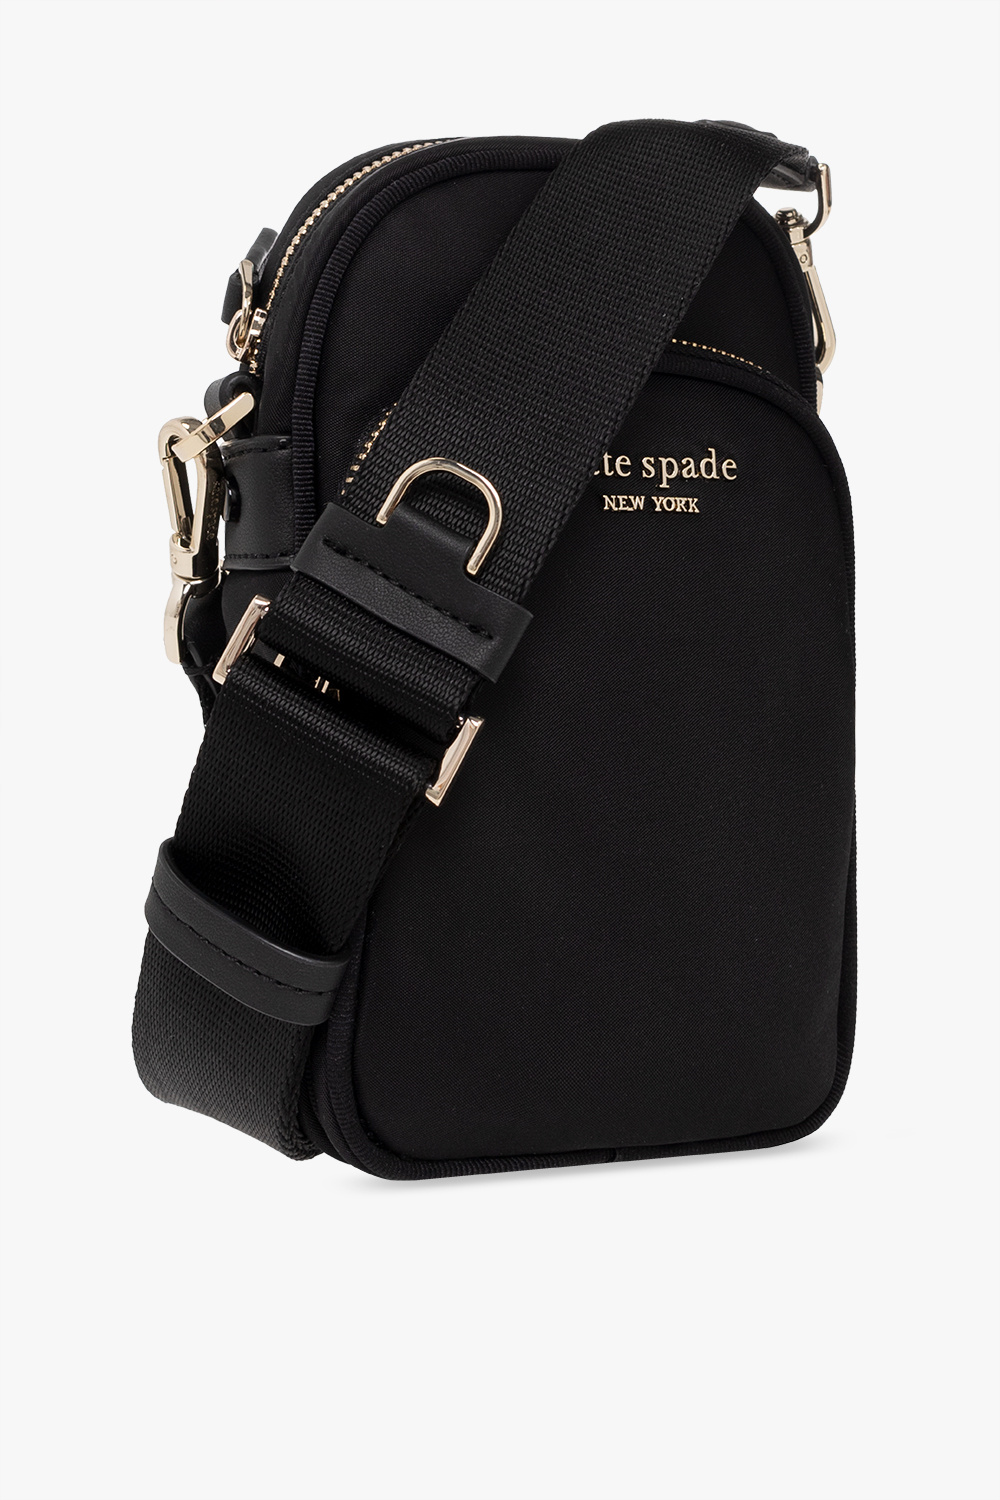 Kate Spade ‘The Little Better Sam’ shoulder bag